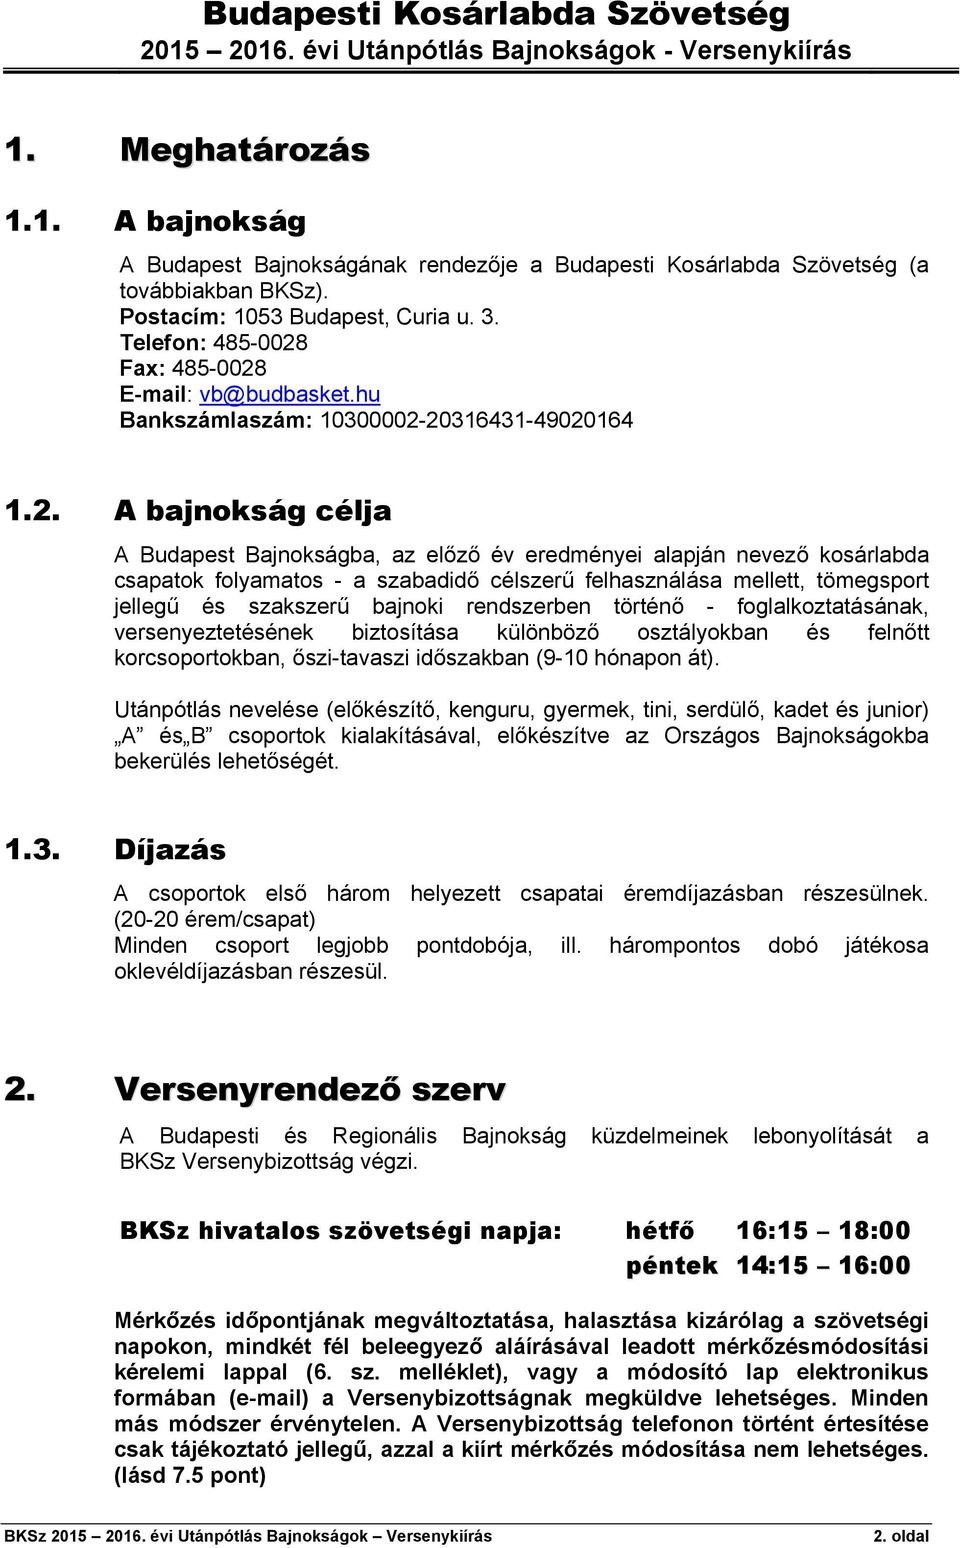 Budapesti Kosárlabda Szövetség - PDF Ingyenes letöltés